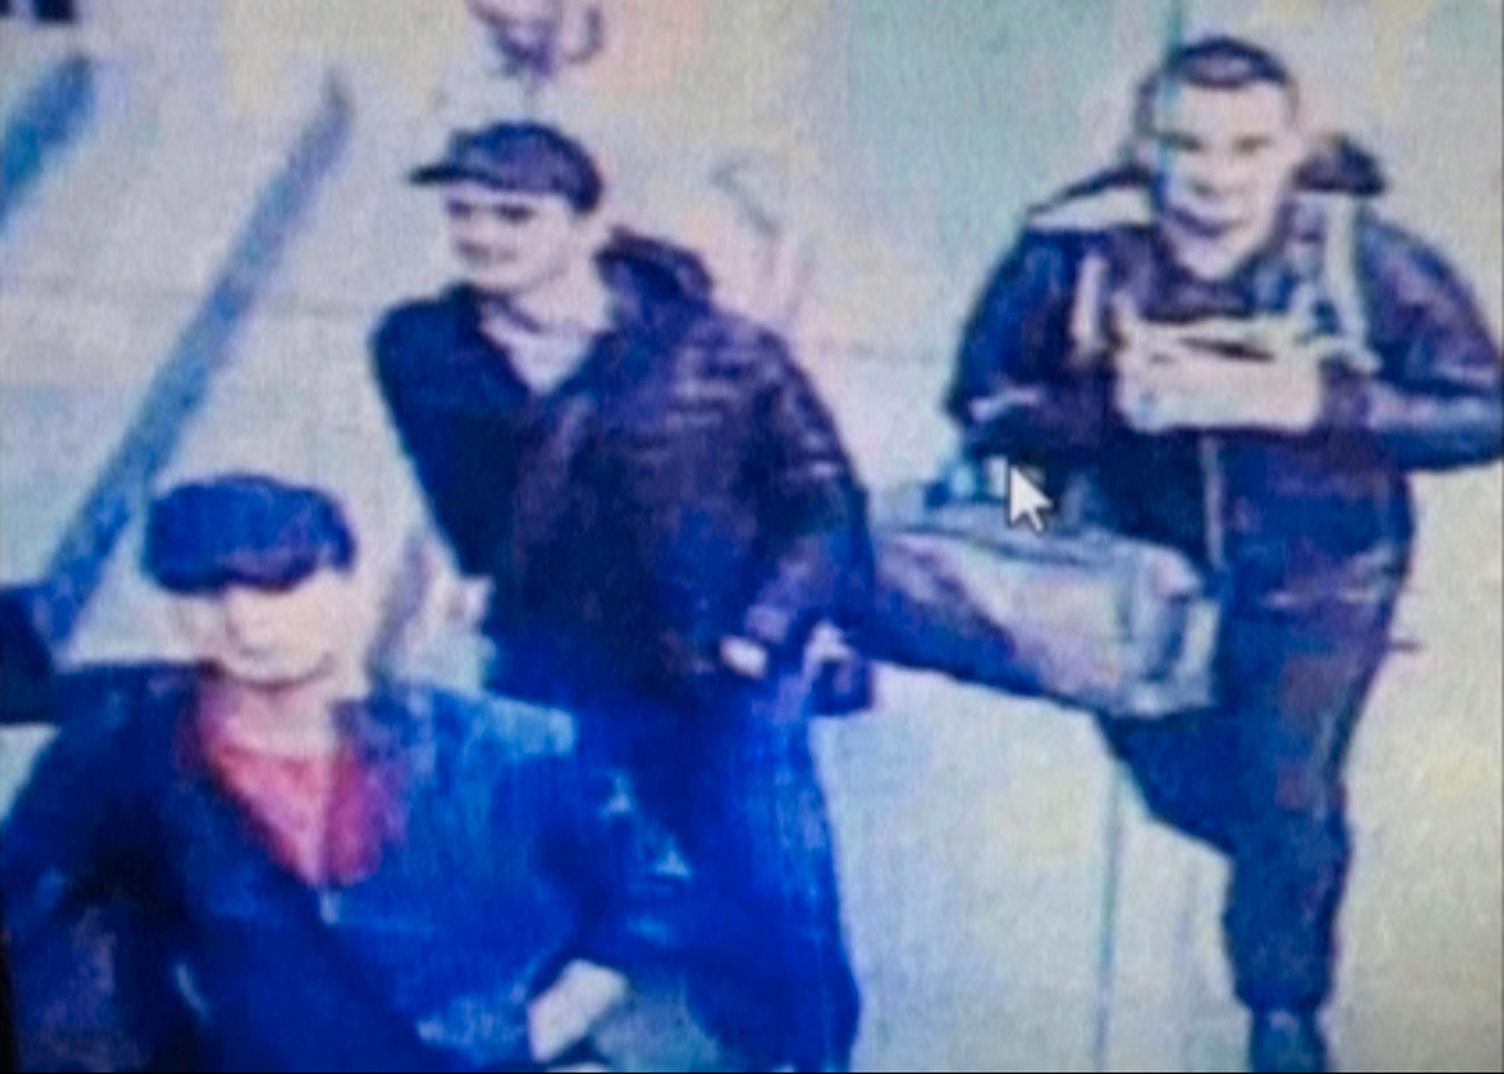 ANGRIPERNE: Dette bildet fra et overvåkningkamera viser det som er antatt å være gjerningsmennene bak terrorangrepet på flyplassen i Istanbul. Fremdeles er det uvisst om de er tilknyttet IS, eller om andre står bak angrepet.